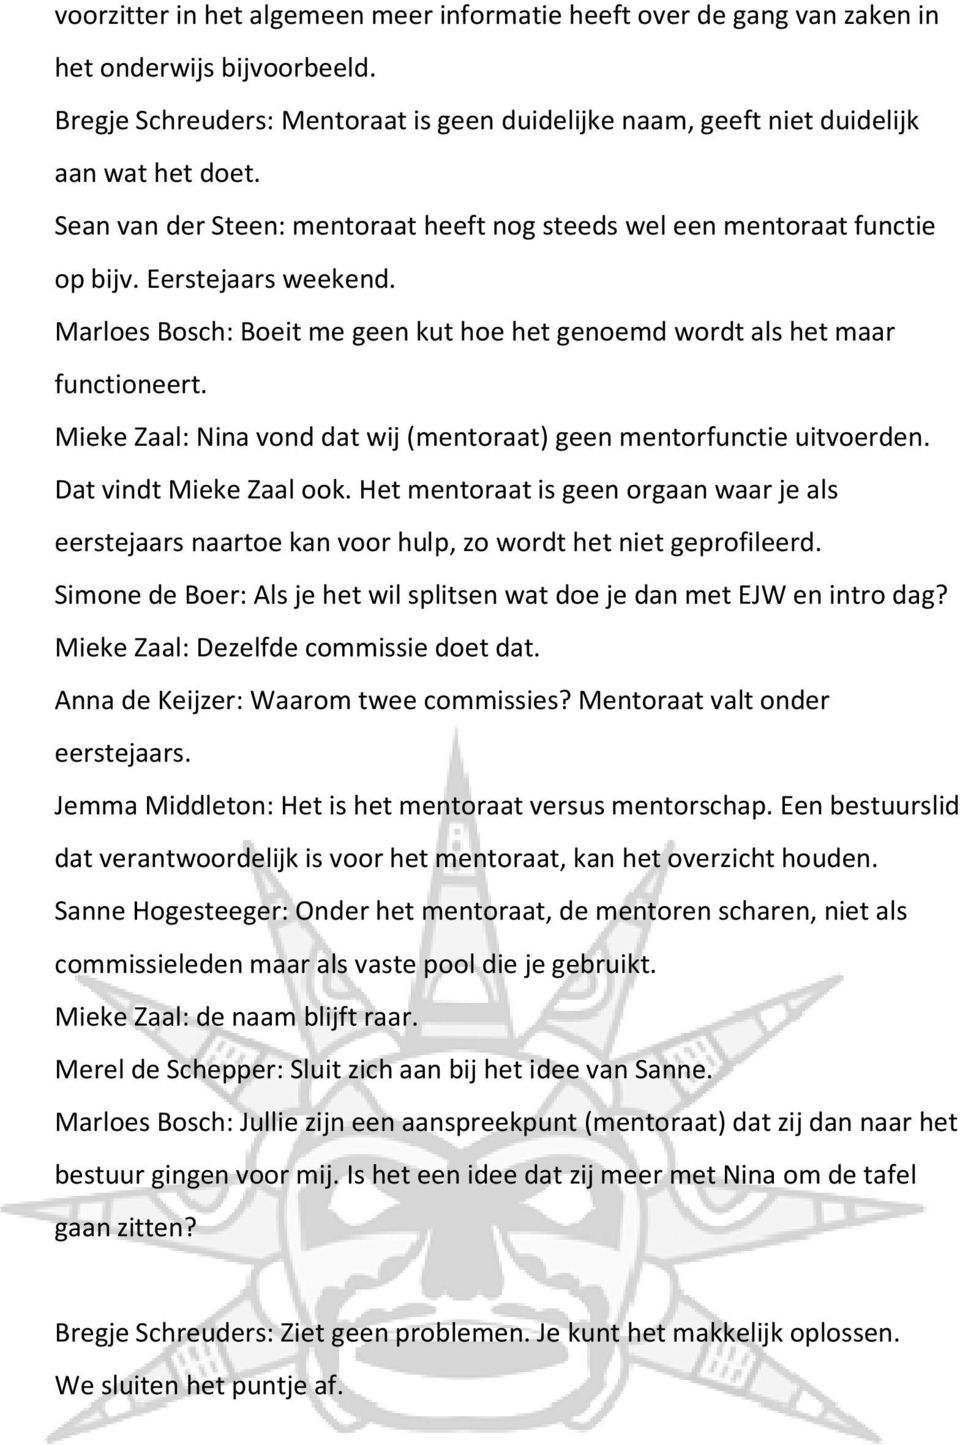 Mieke Zaal: Nina vond dat wij (mentoraat) geen mentorfunctie uitvoerden. Dat vindt Mieke Zaal ook.